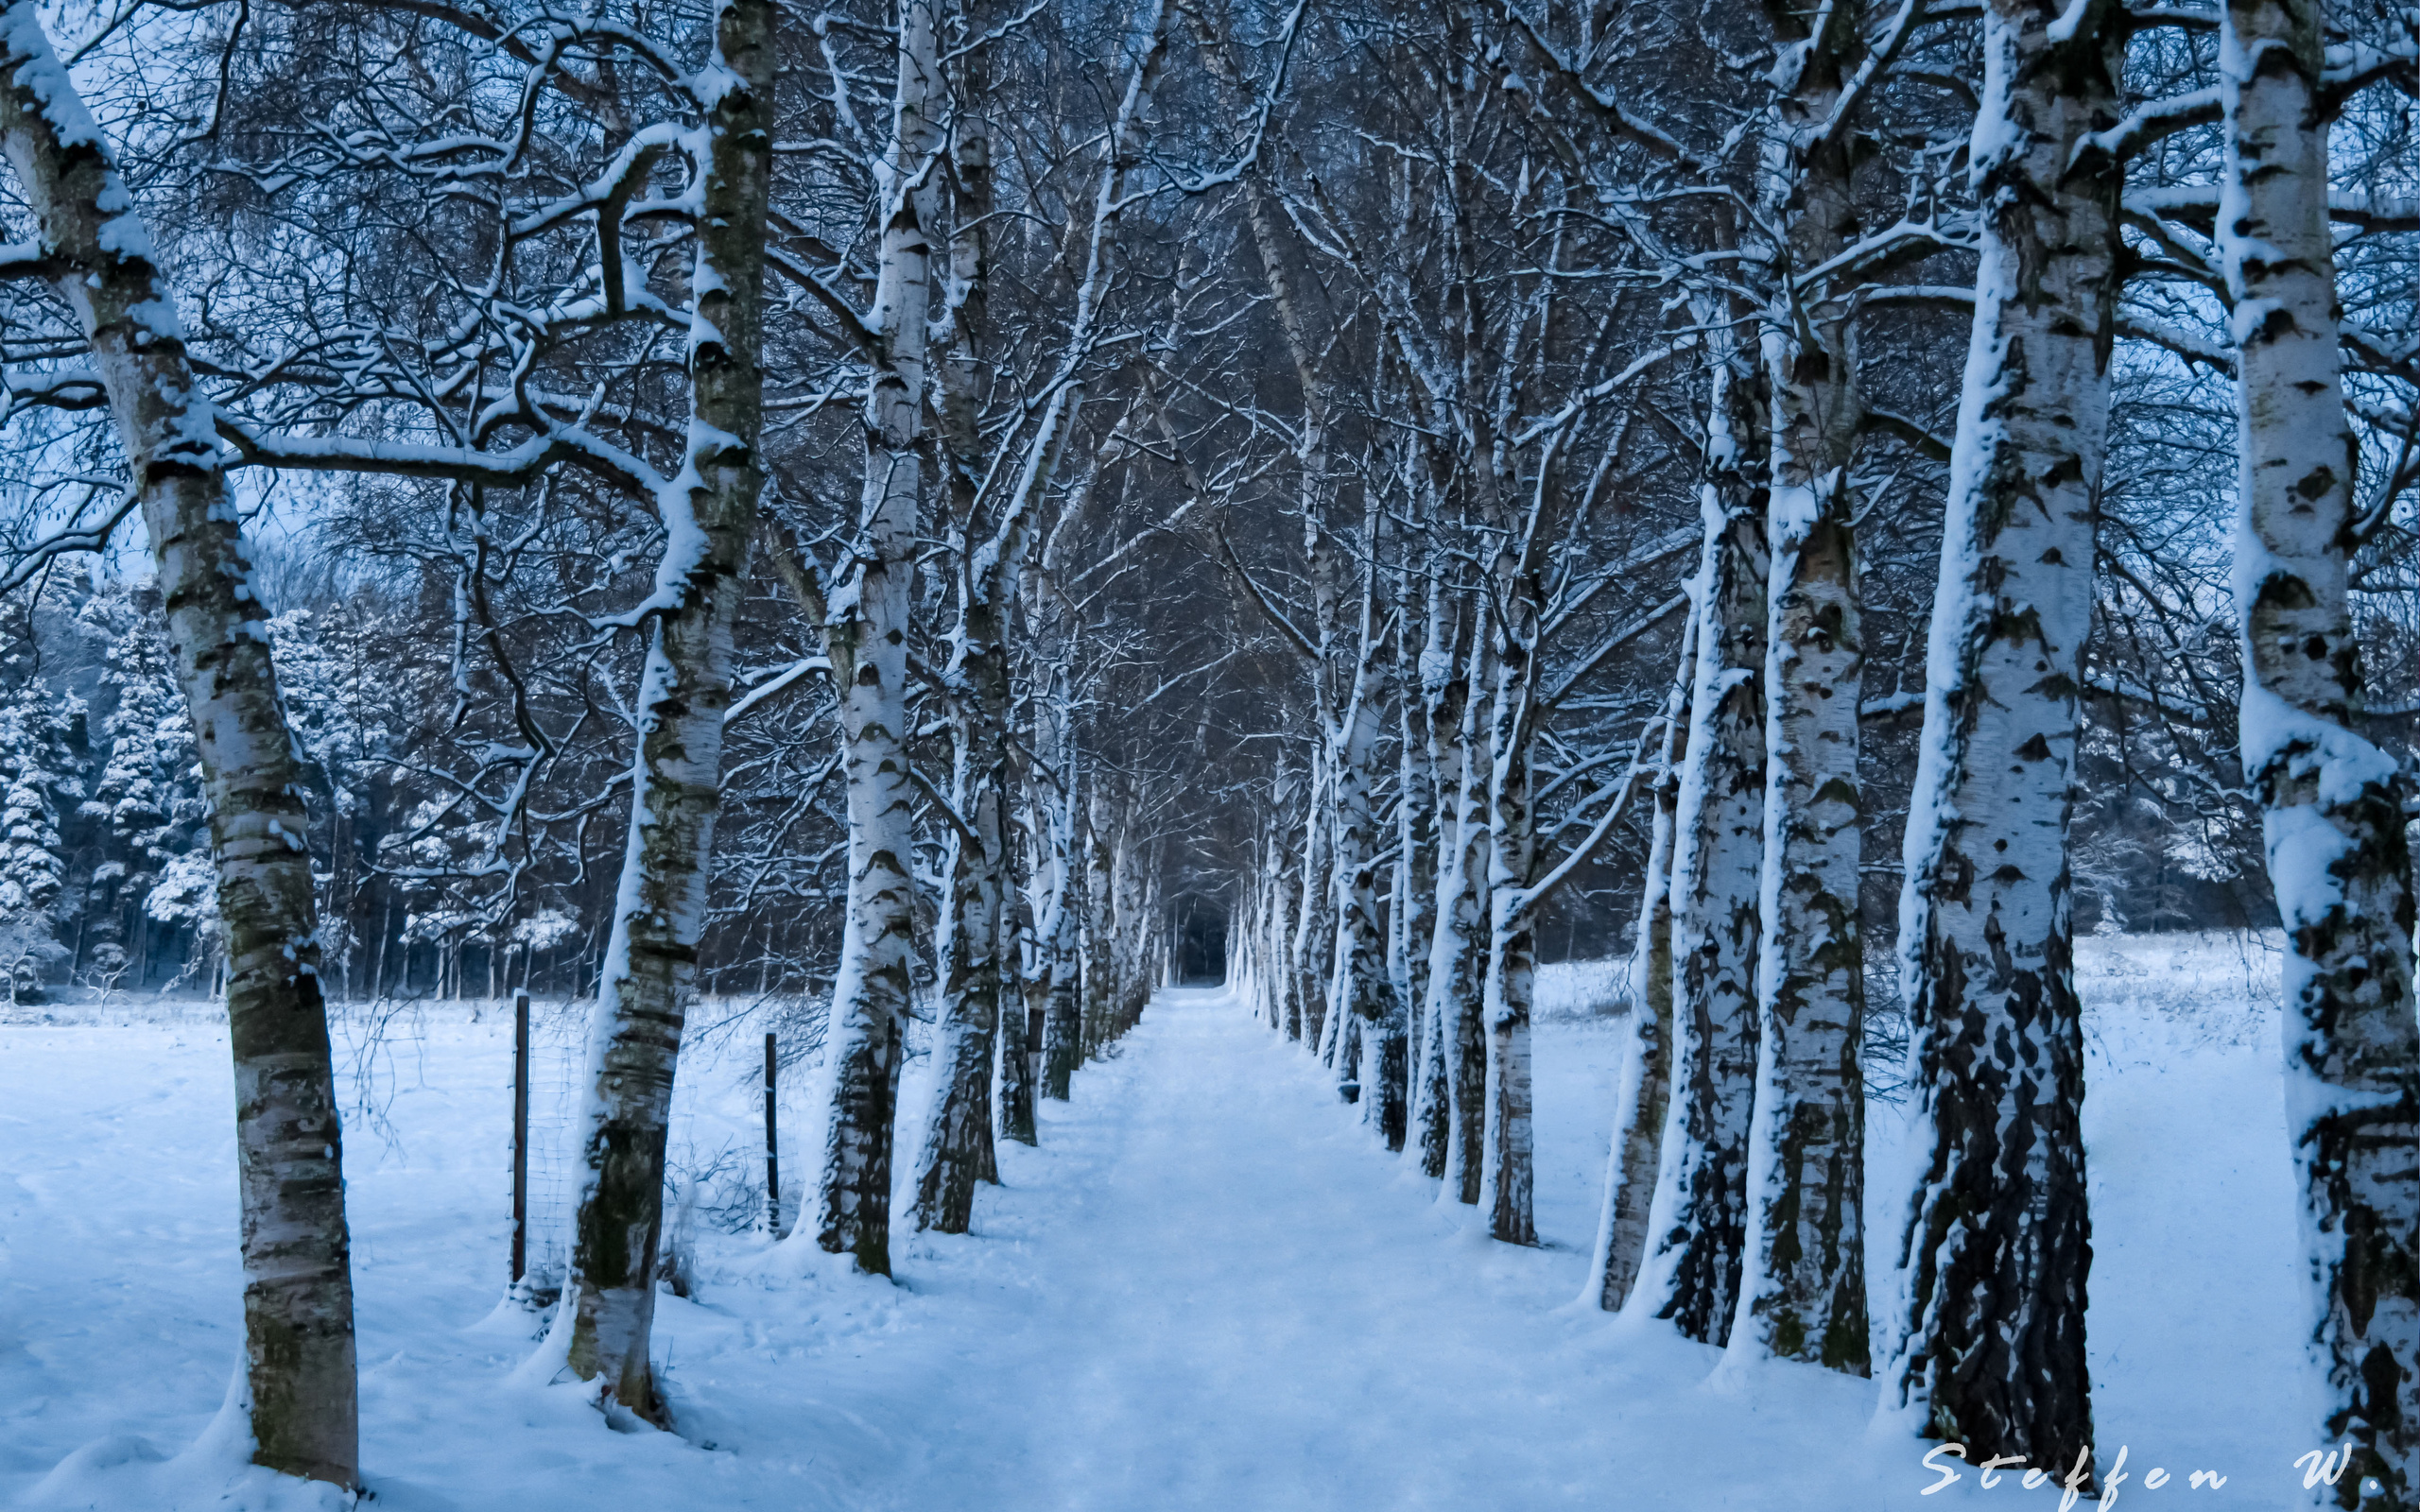 Скачать обои бесплатно Зима, Снег, Лес, Дерево, Дорожка, Земля/природа картинка на рабочий стол ПК